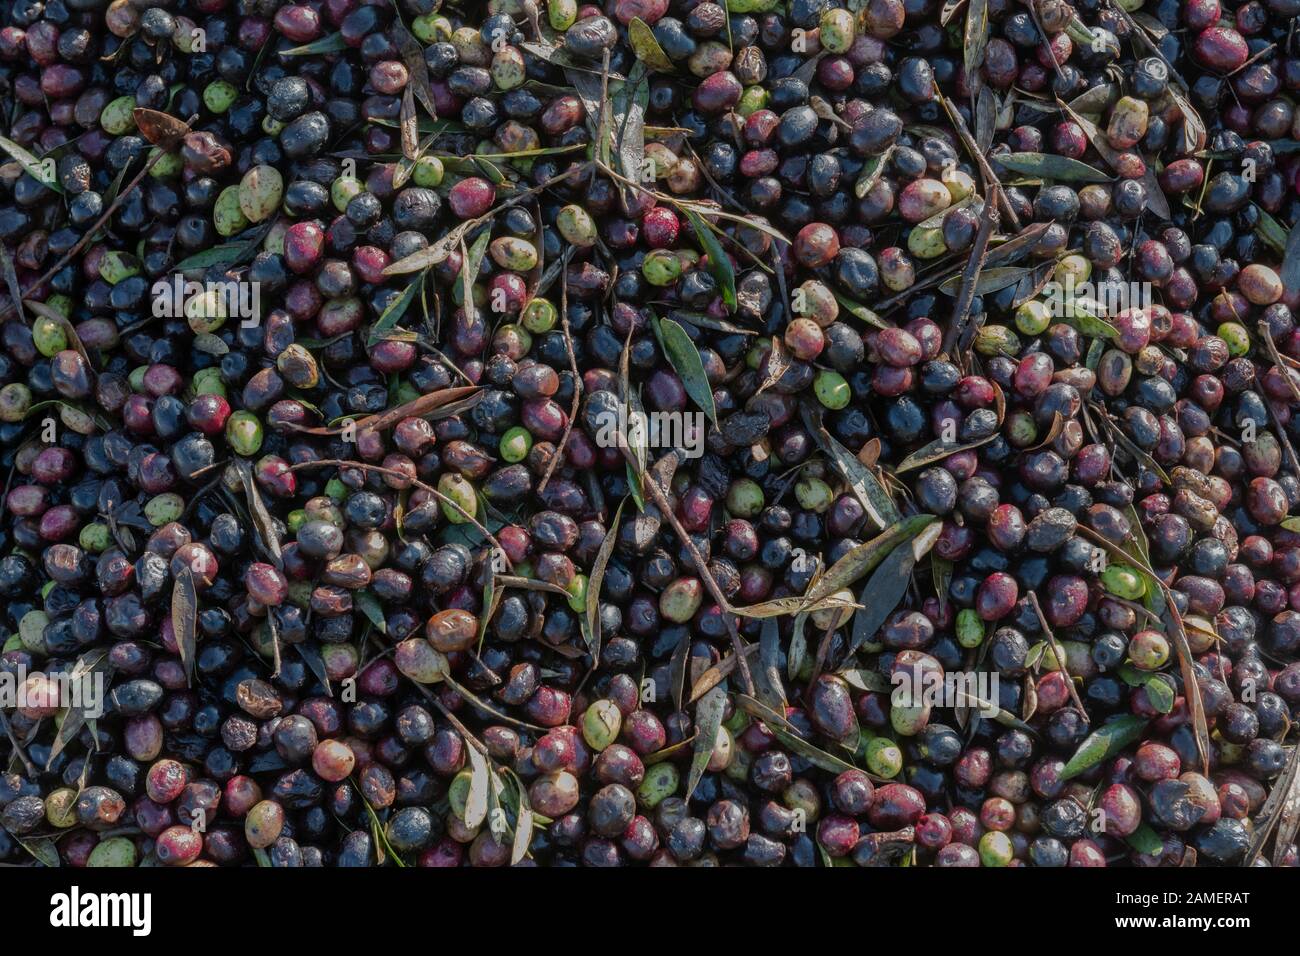 Olivenernte in Marokko für die Produktion von biologischem Olivenöl. Nahaufnahme von schwarzen, grünen und roten Oliven mit Blättern, ungewaschen und natürlich. Stockfoto